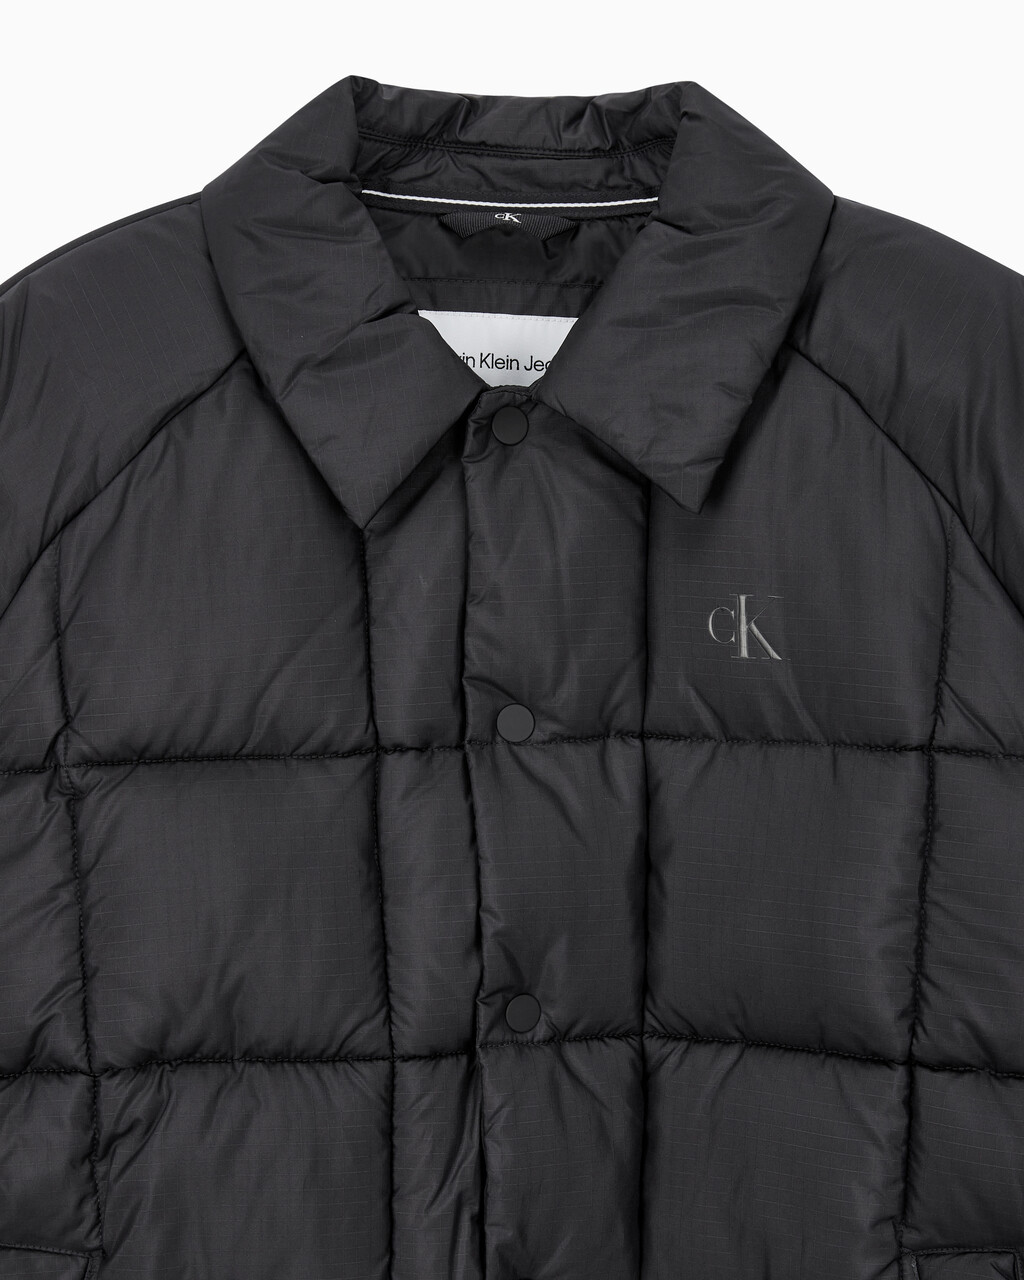 Buy 남성 프리미엄 라인 에센셜 패디드 오버셔츠 in color CK BLACK